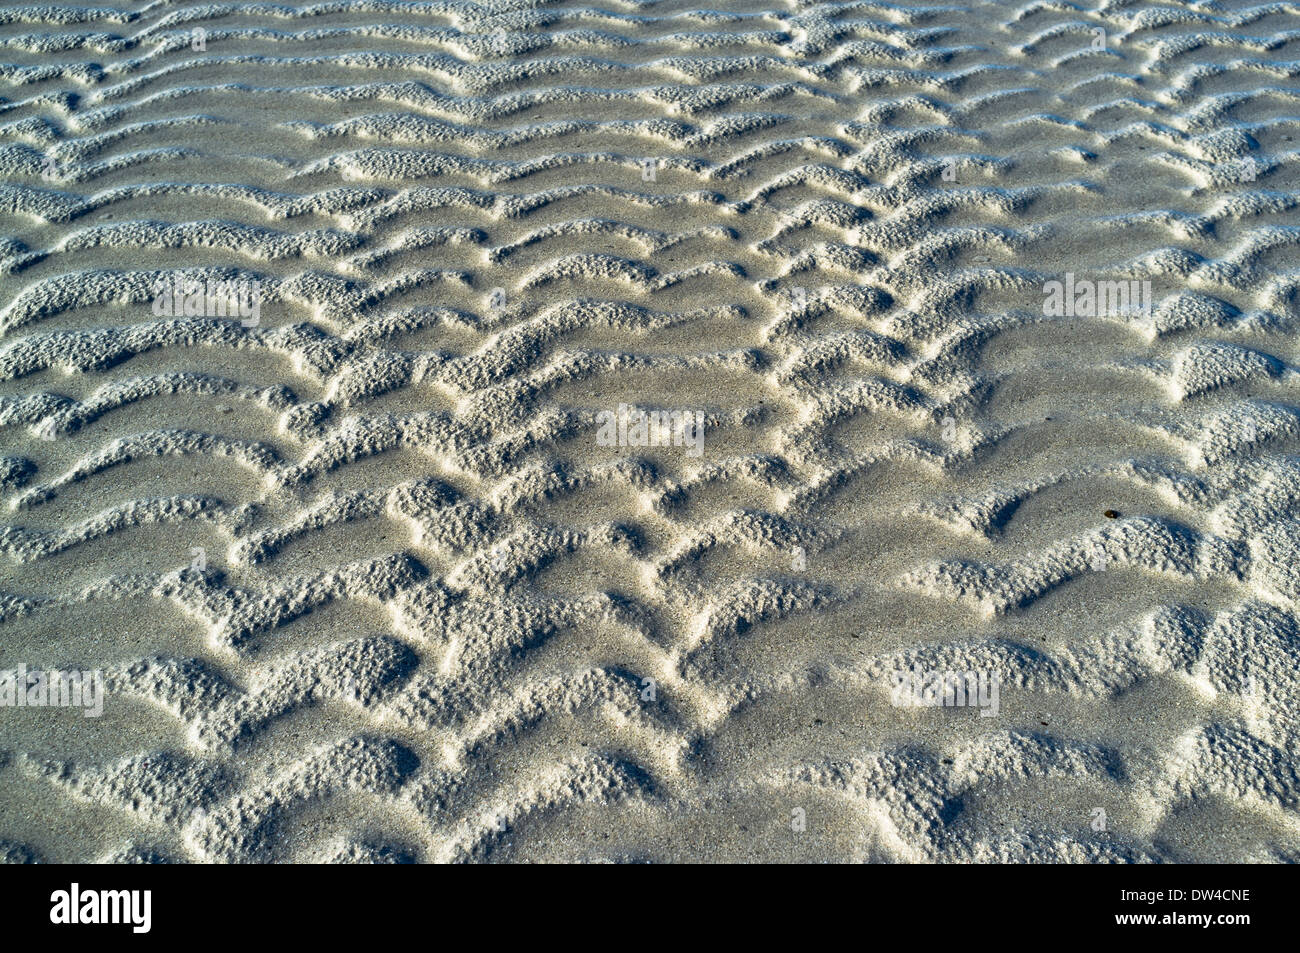 FONDO DE ARENA dh Patrones de arena abstractos marea baja fondo del lecho marino patrón de cerca de la textura de la playa Foto de stock